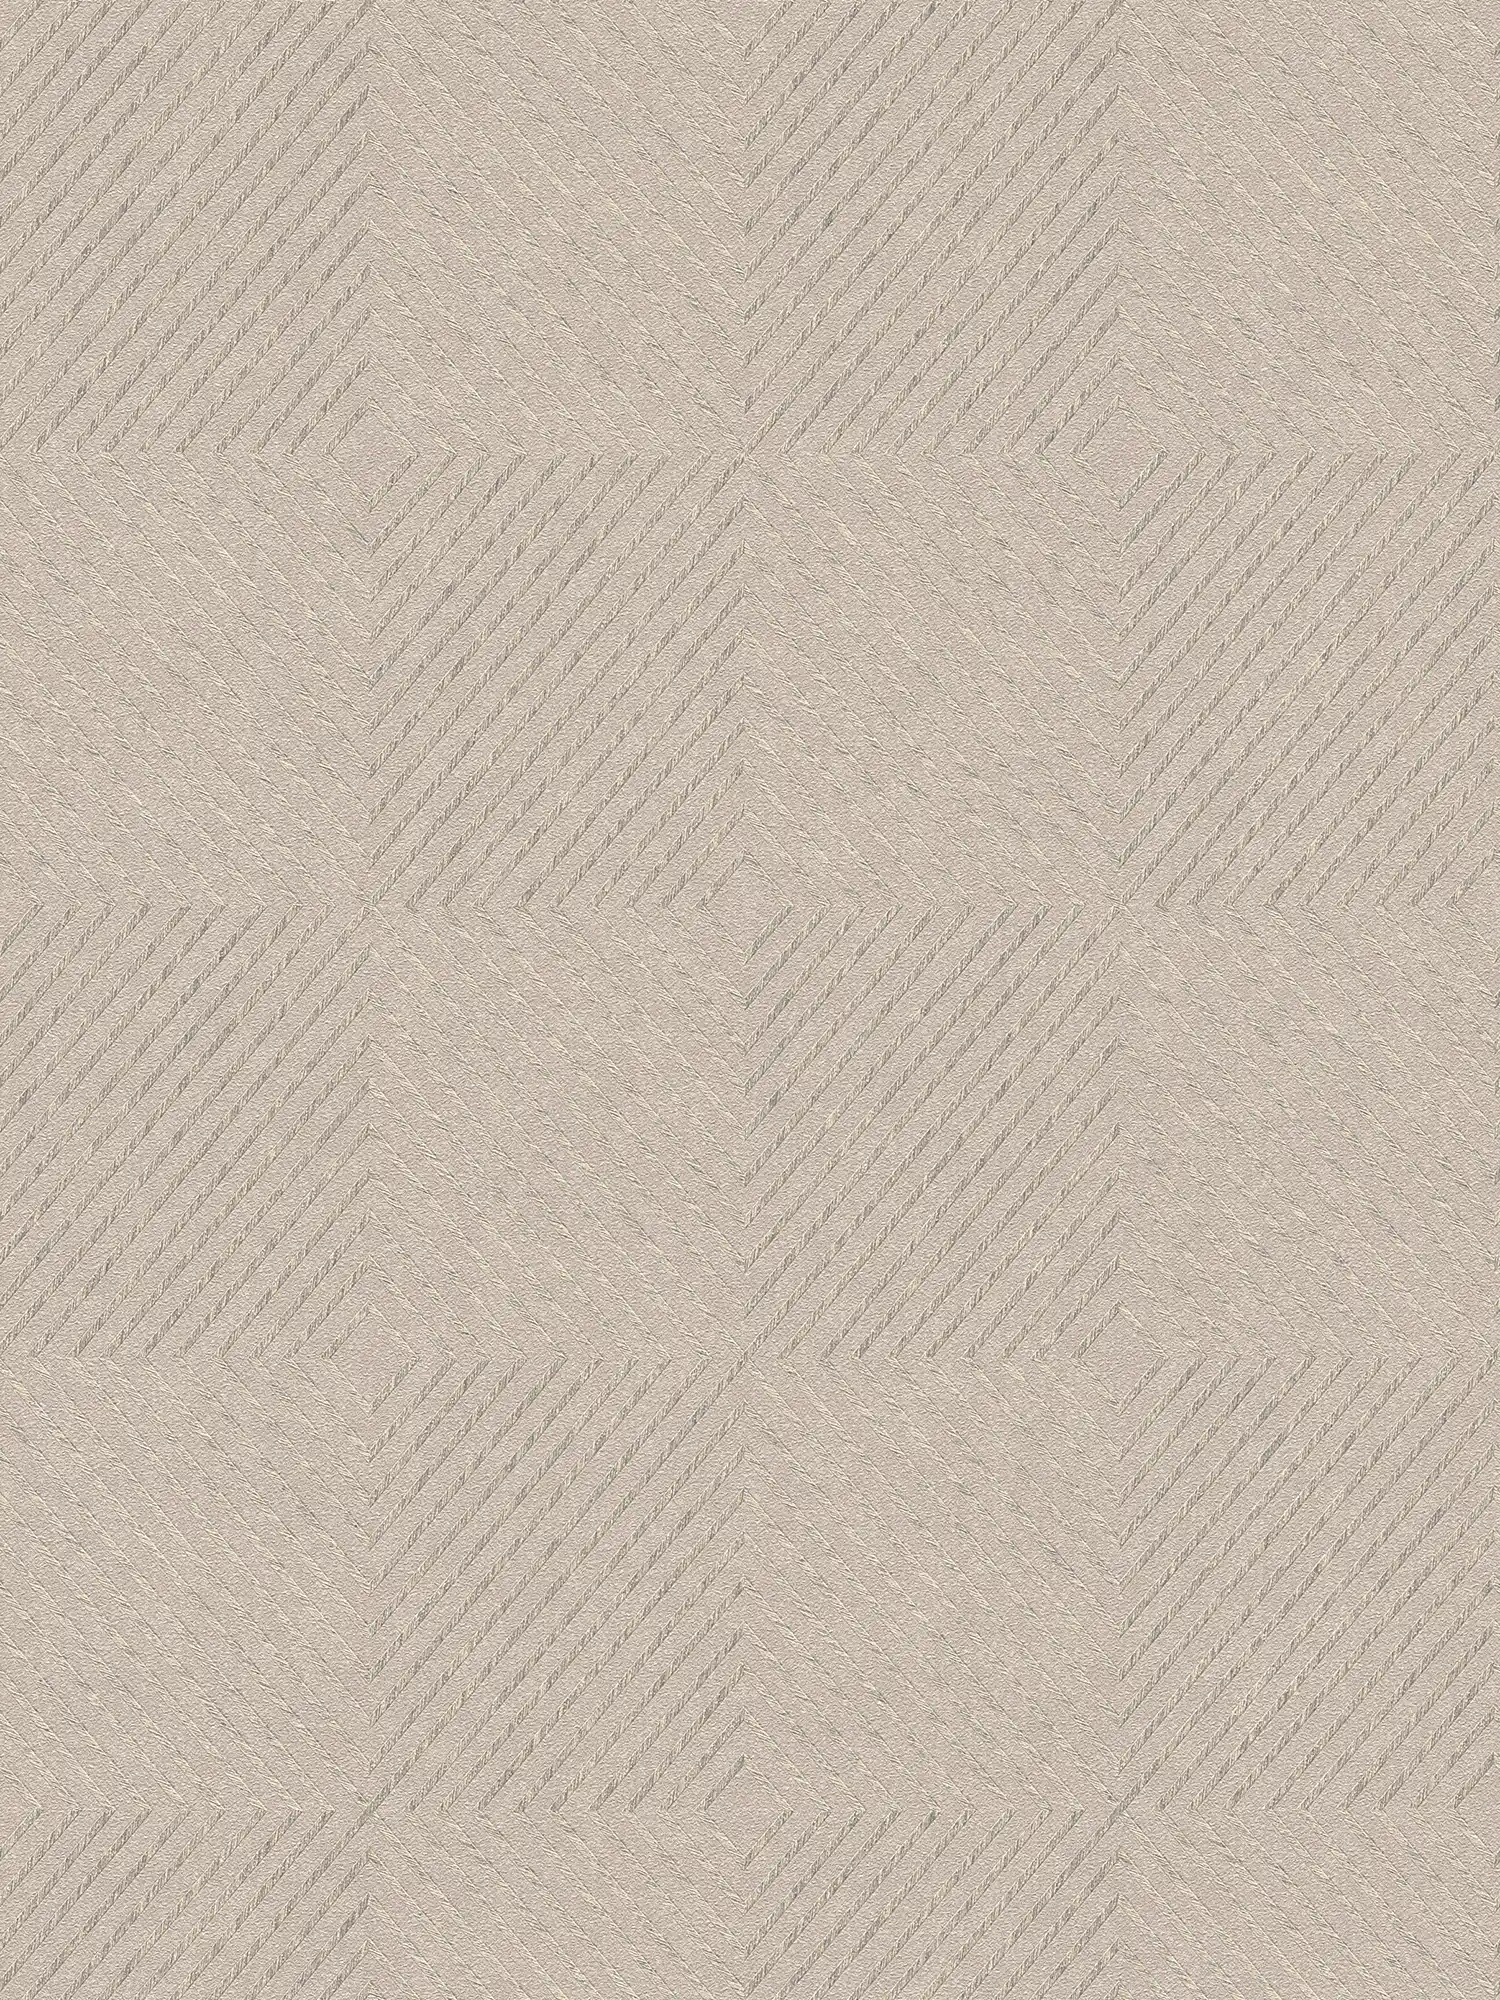 Papier peint design graphique, style scandinave - beige, argenté
